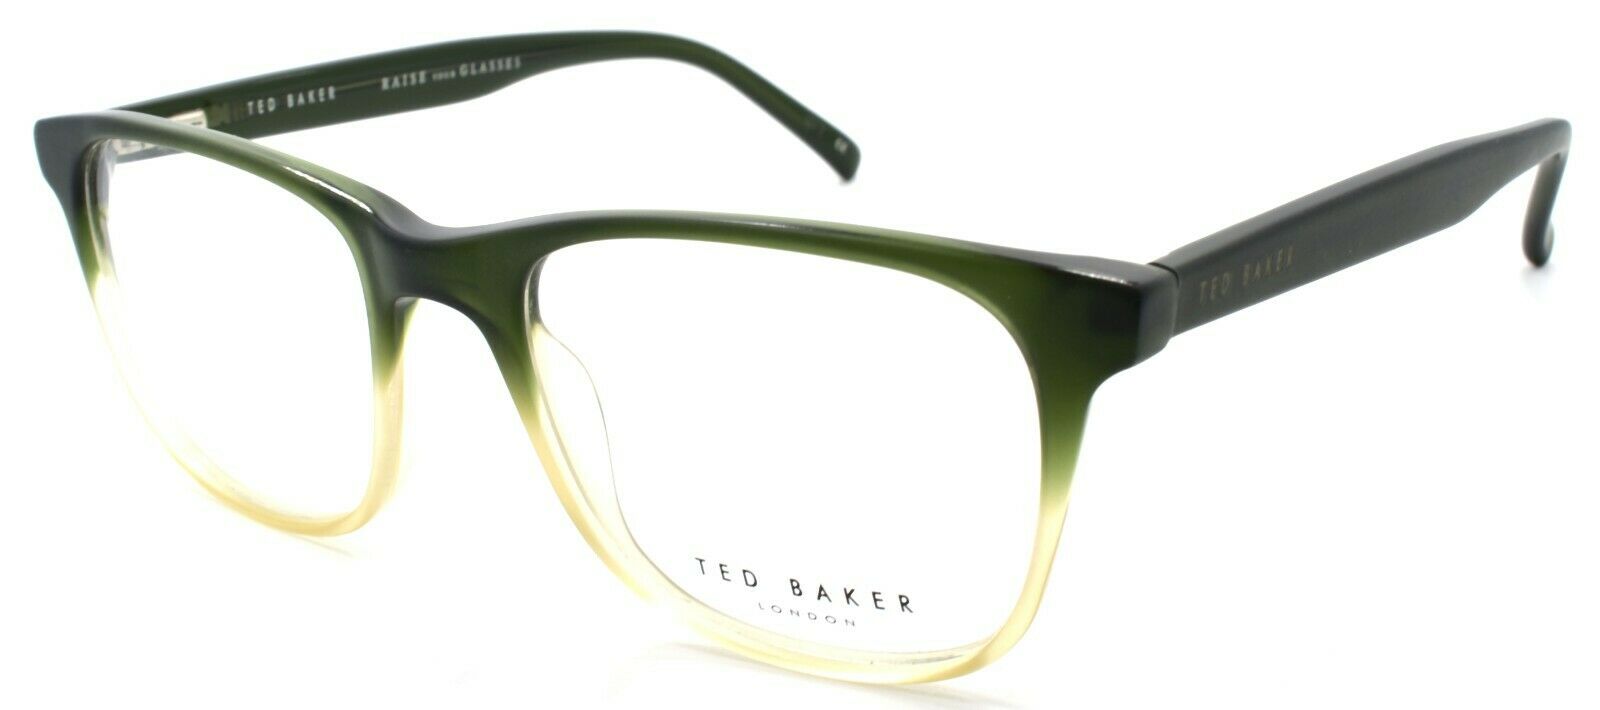 1-Ted Baker Scout 8098 557 Eyeglasses Frames 51-19-145 Forest Green / Honey-4894327076253-IKSpecs